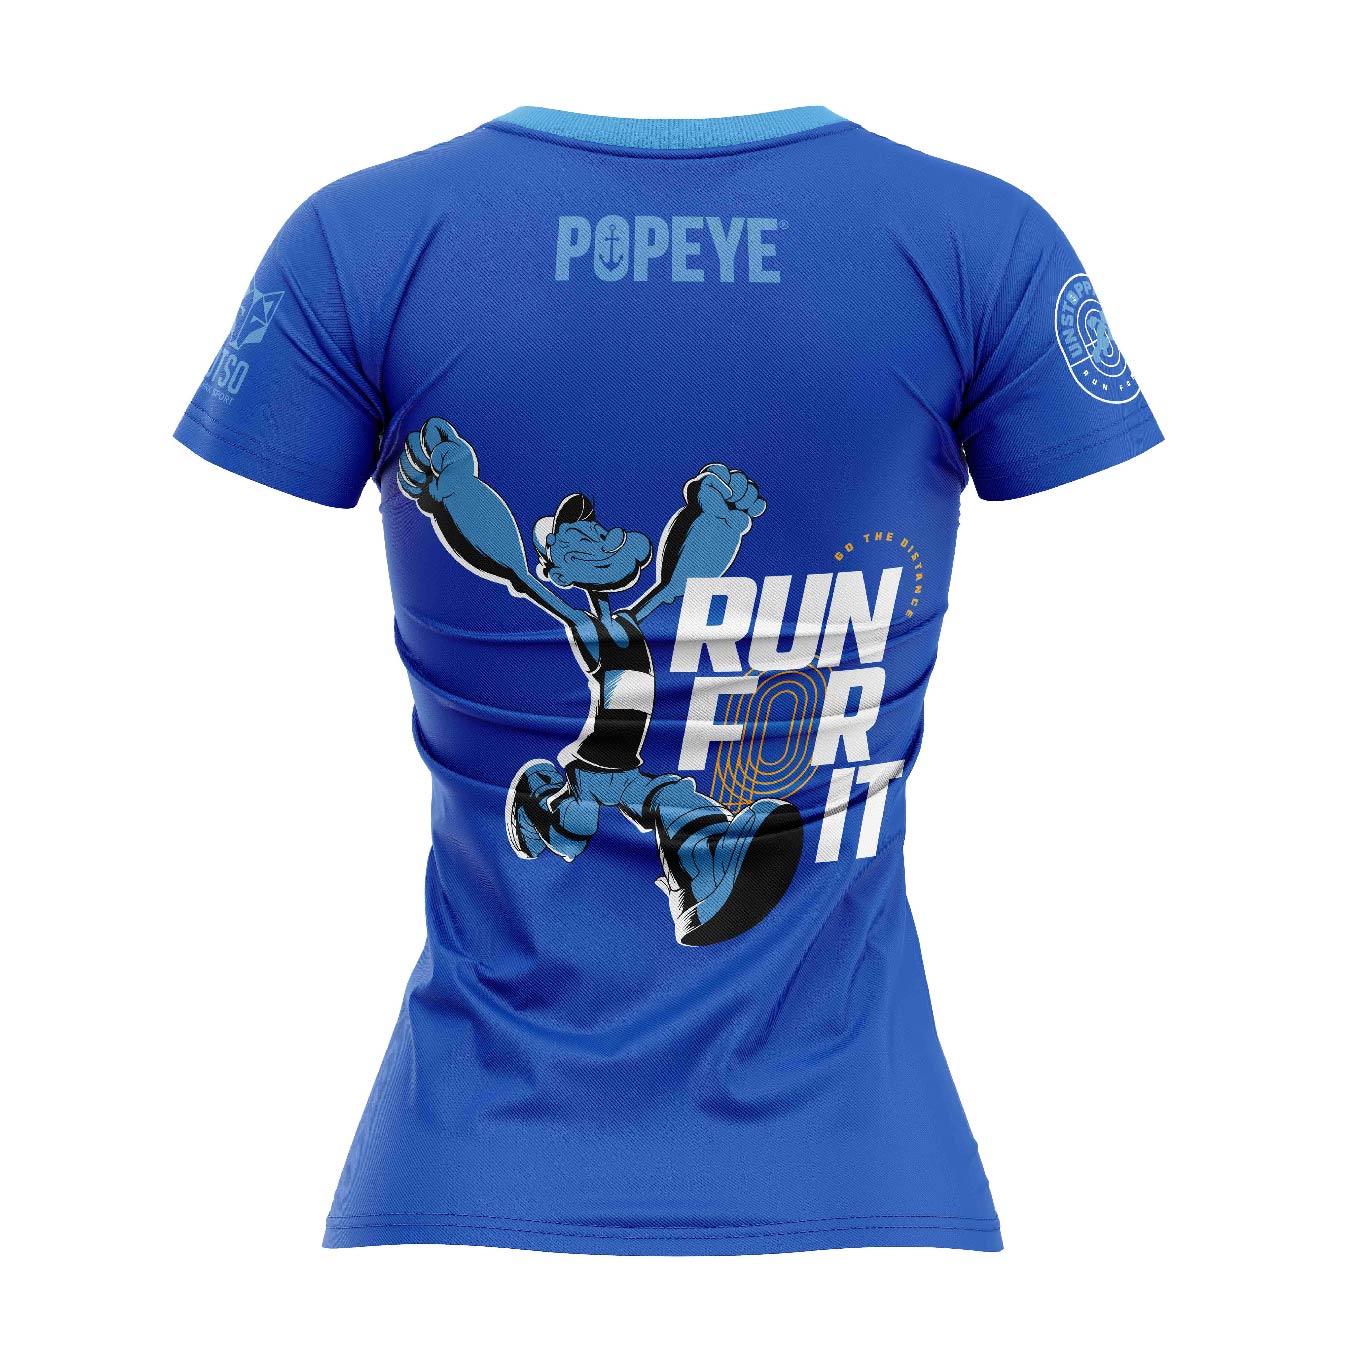 Camiseta manga corta mujer - Popeye Run For It